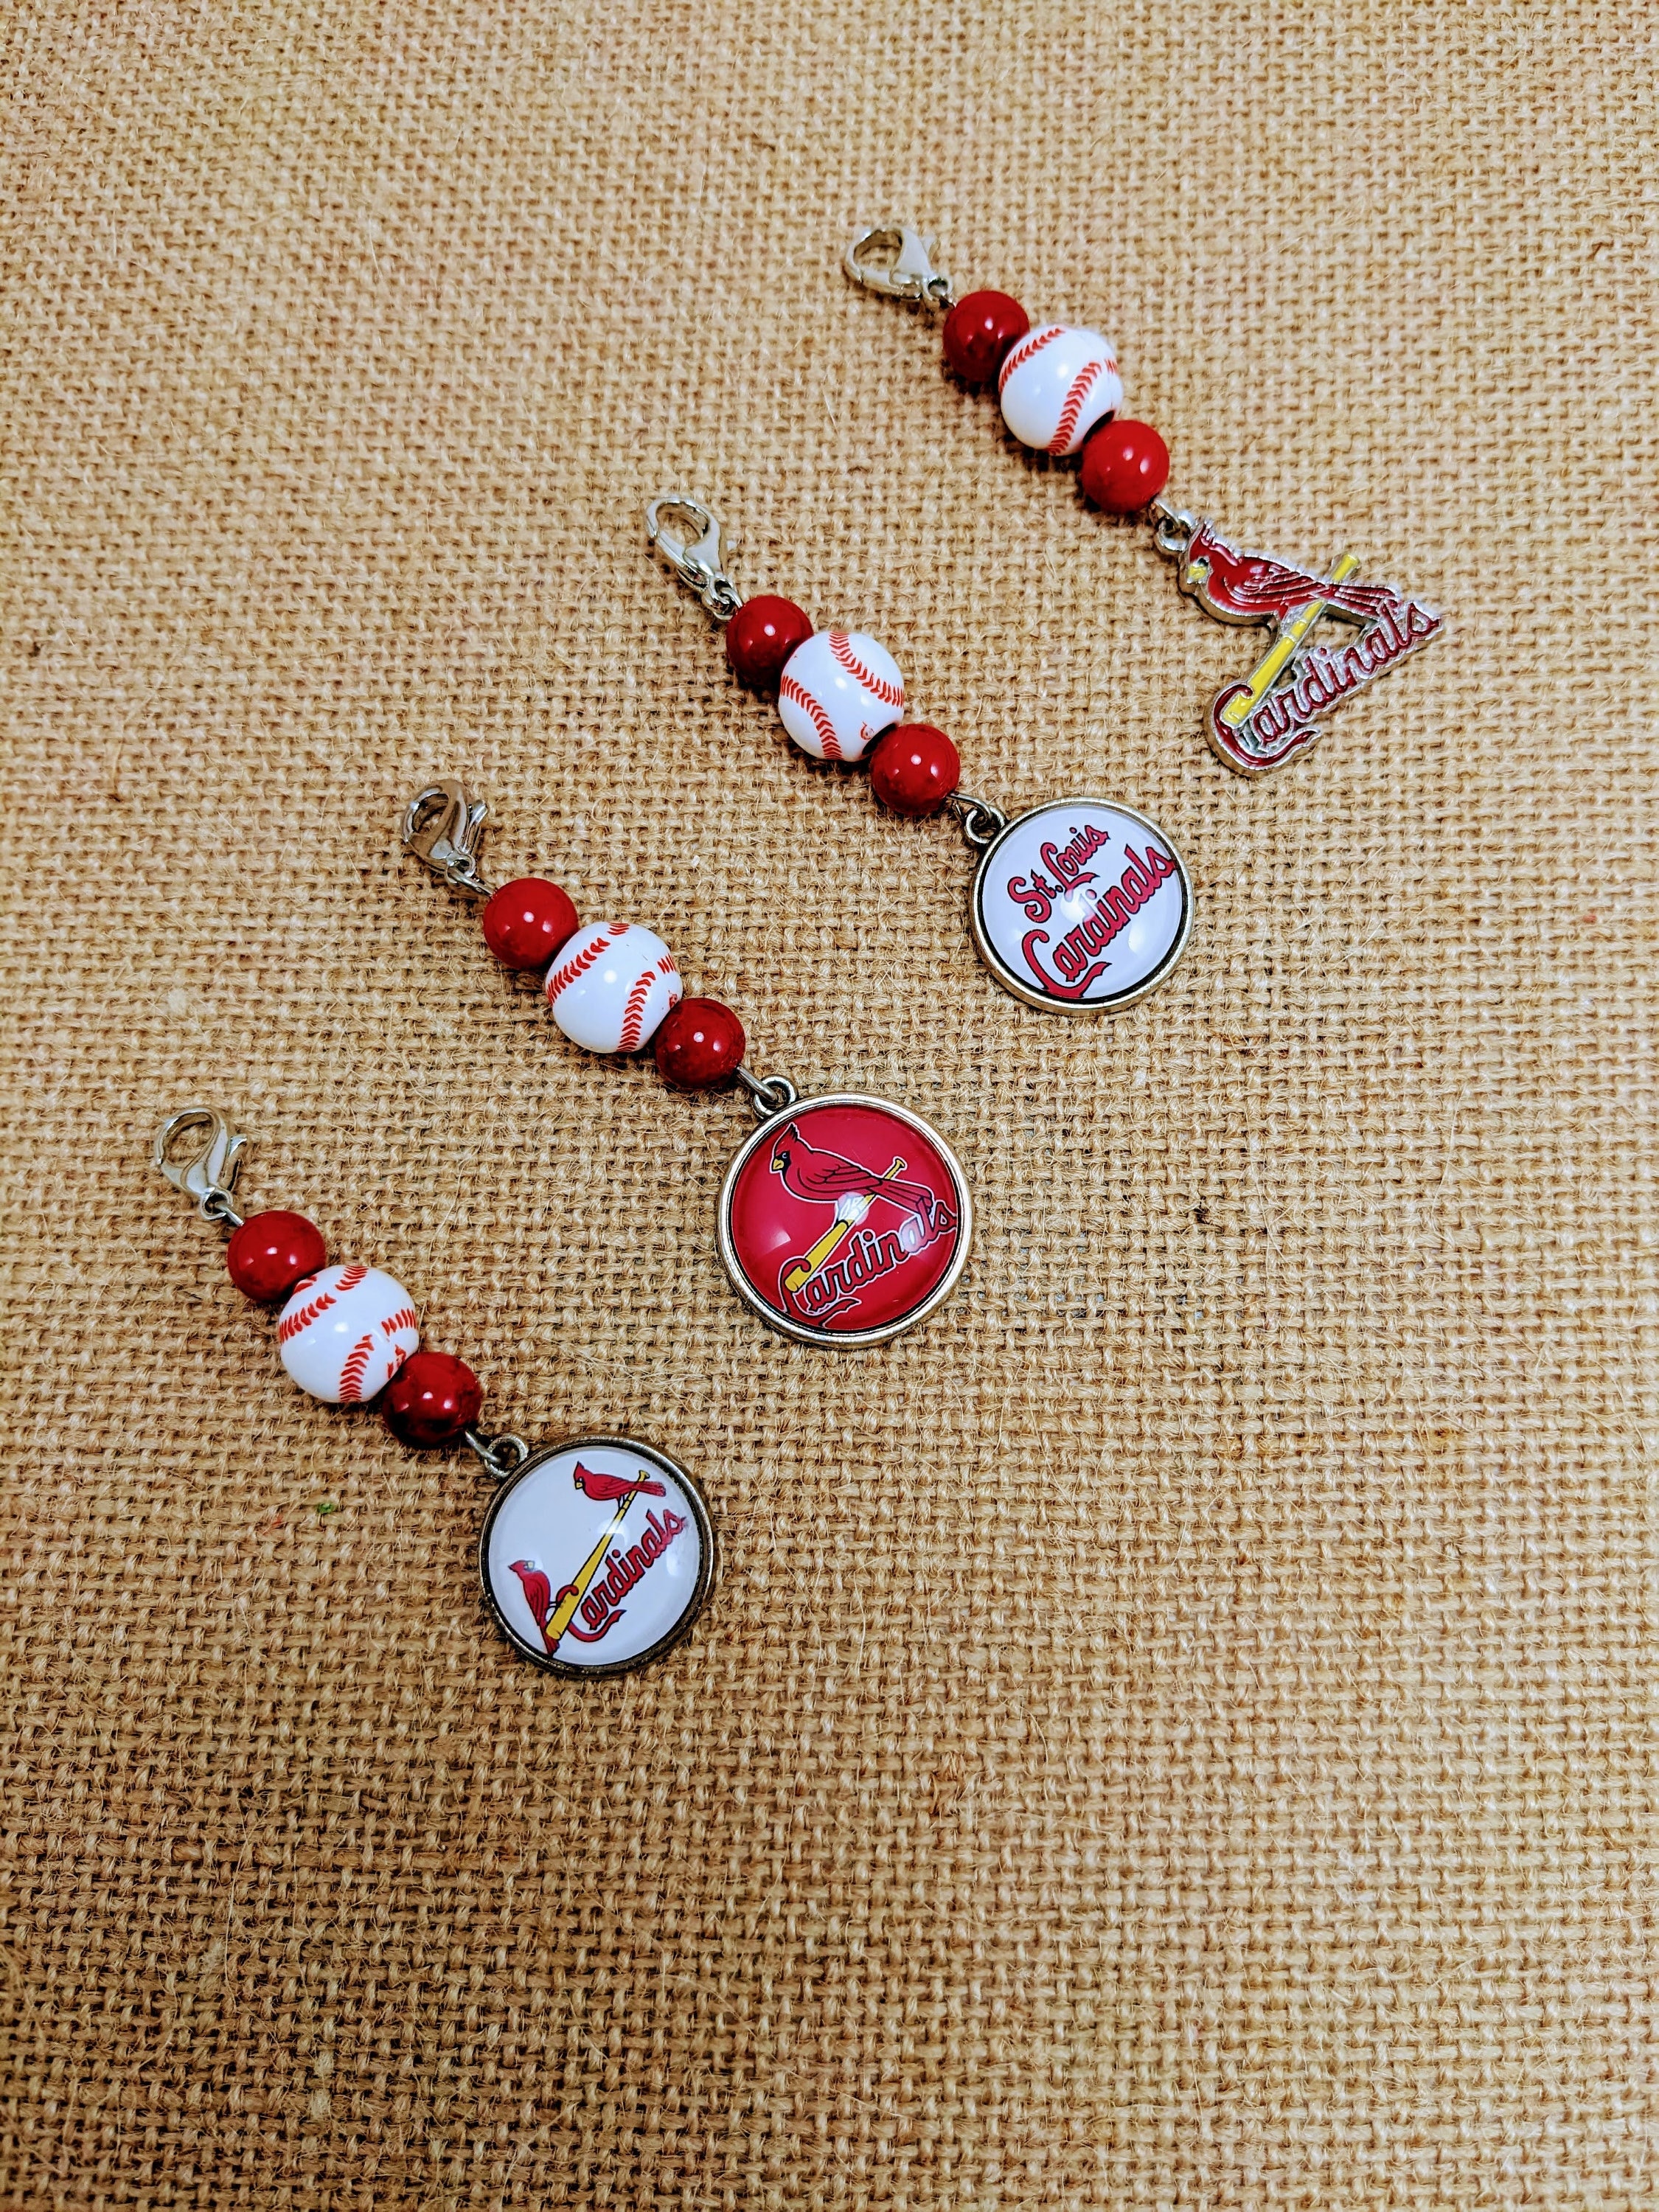 Zazzle Louisville Cardinals Love Keychain, Adult Unisex, Size: Small (1.38), Red/White/Dark Brown